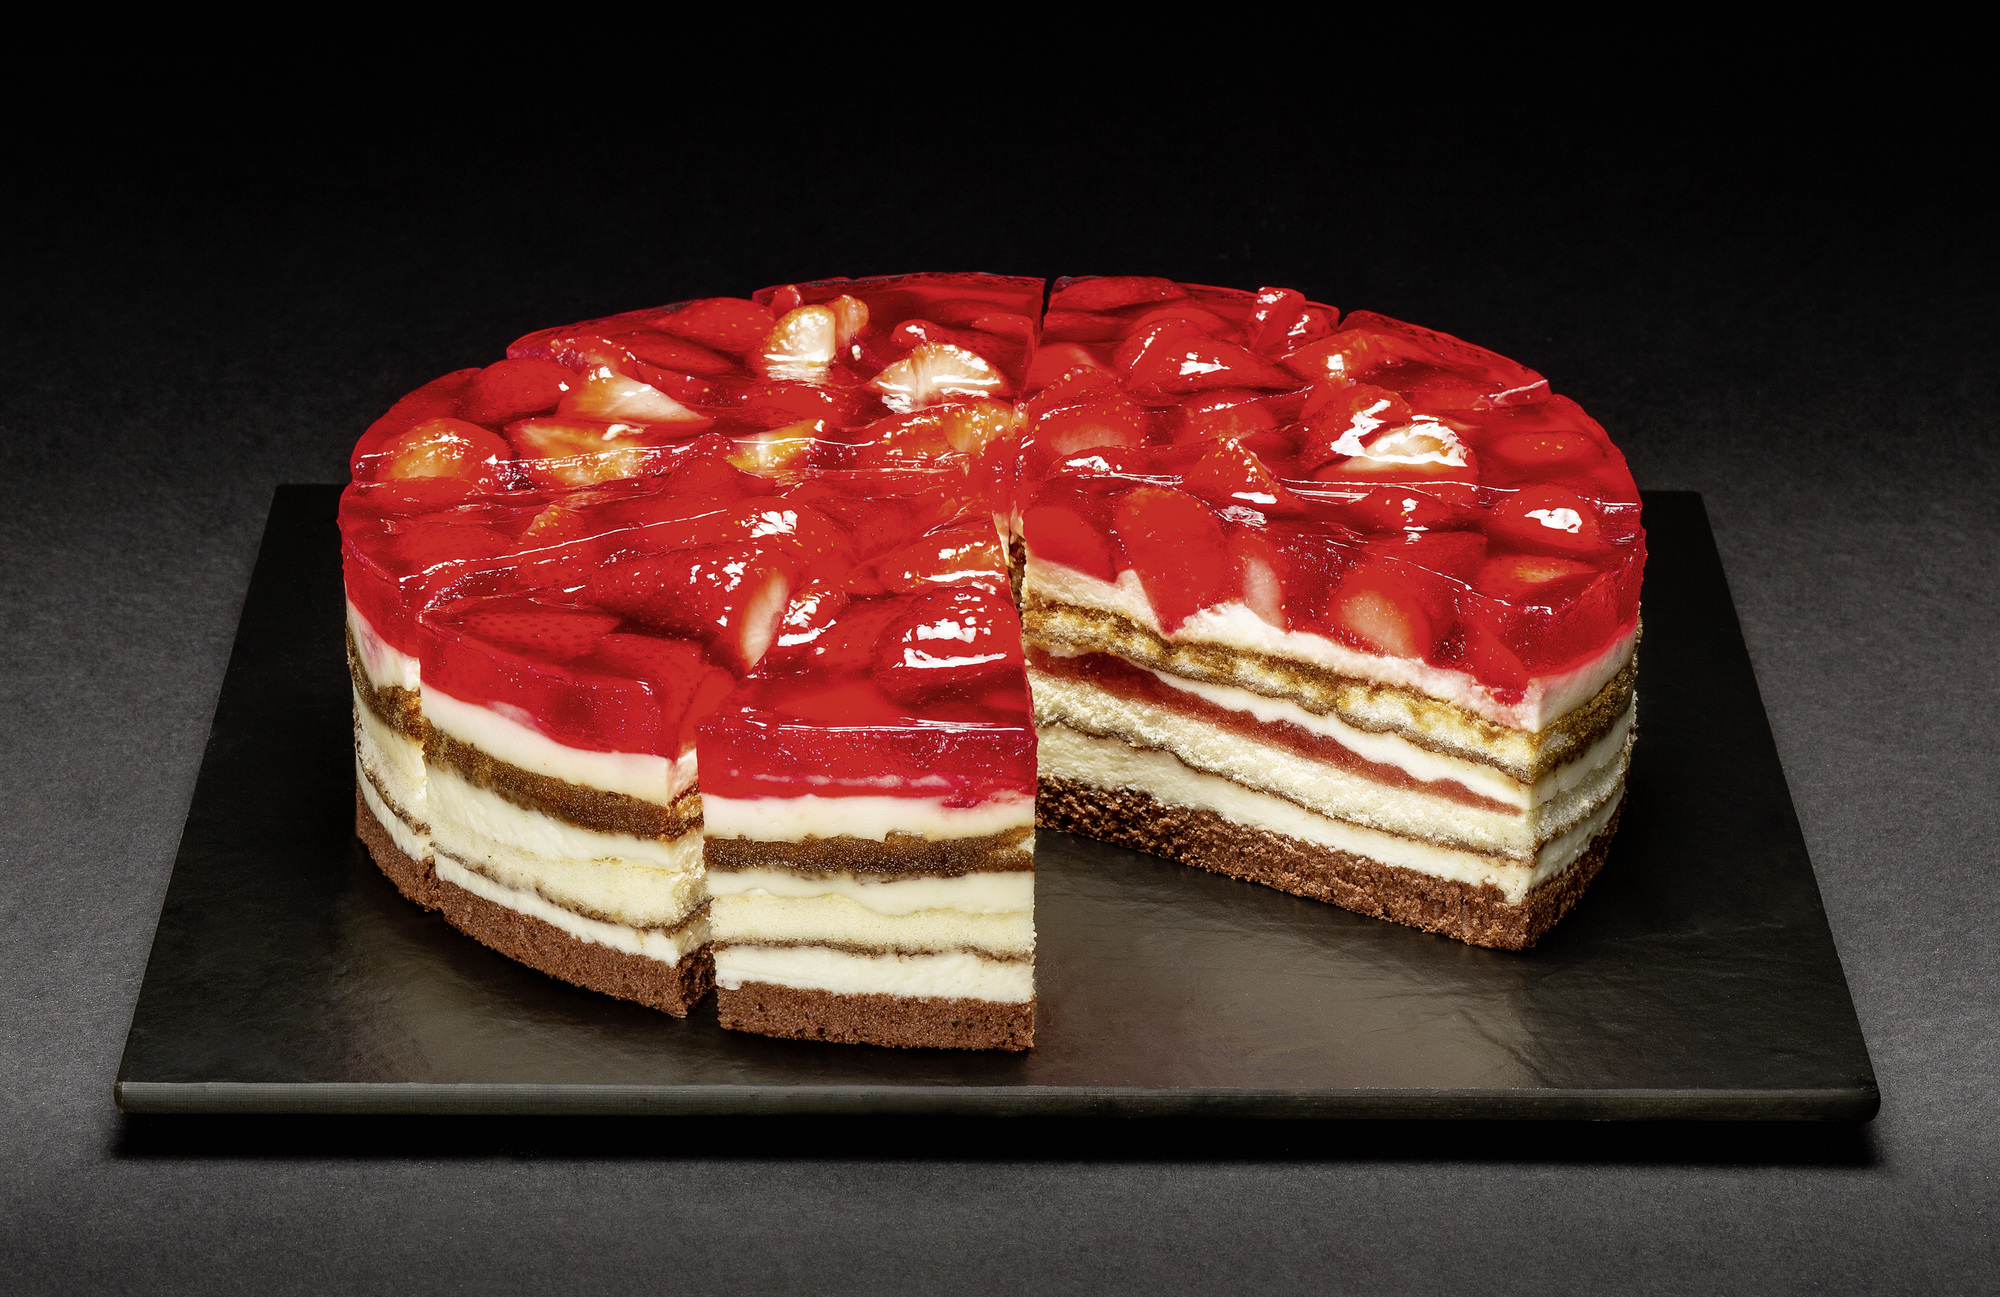 Erdbeer-Tiramisu-Torte geschnitten 2000g